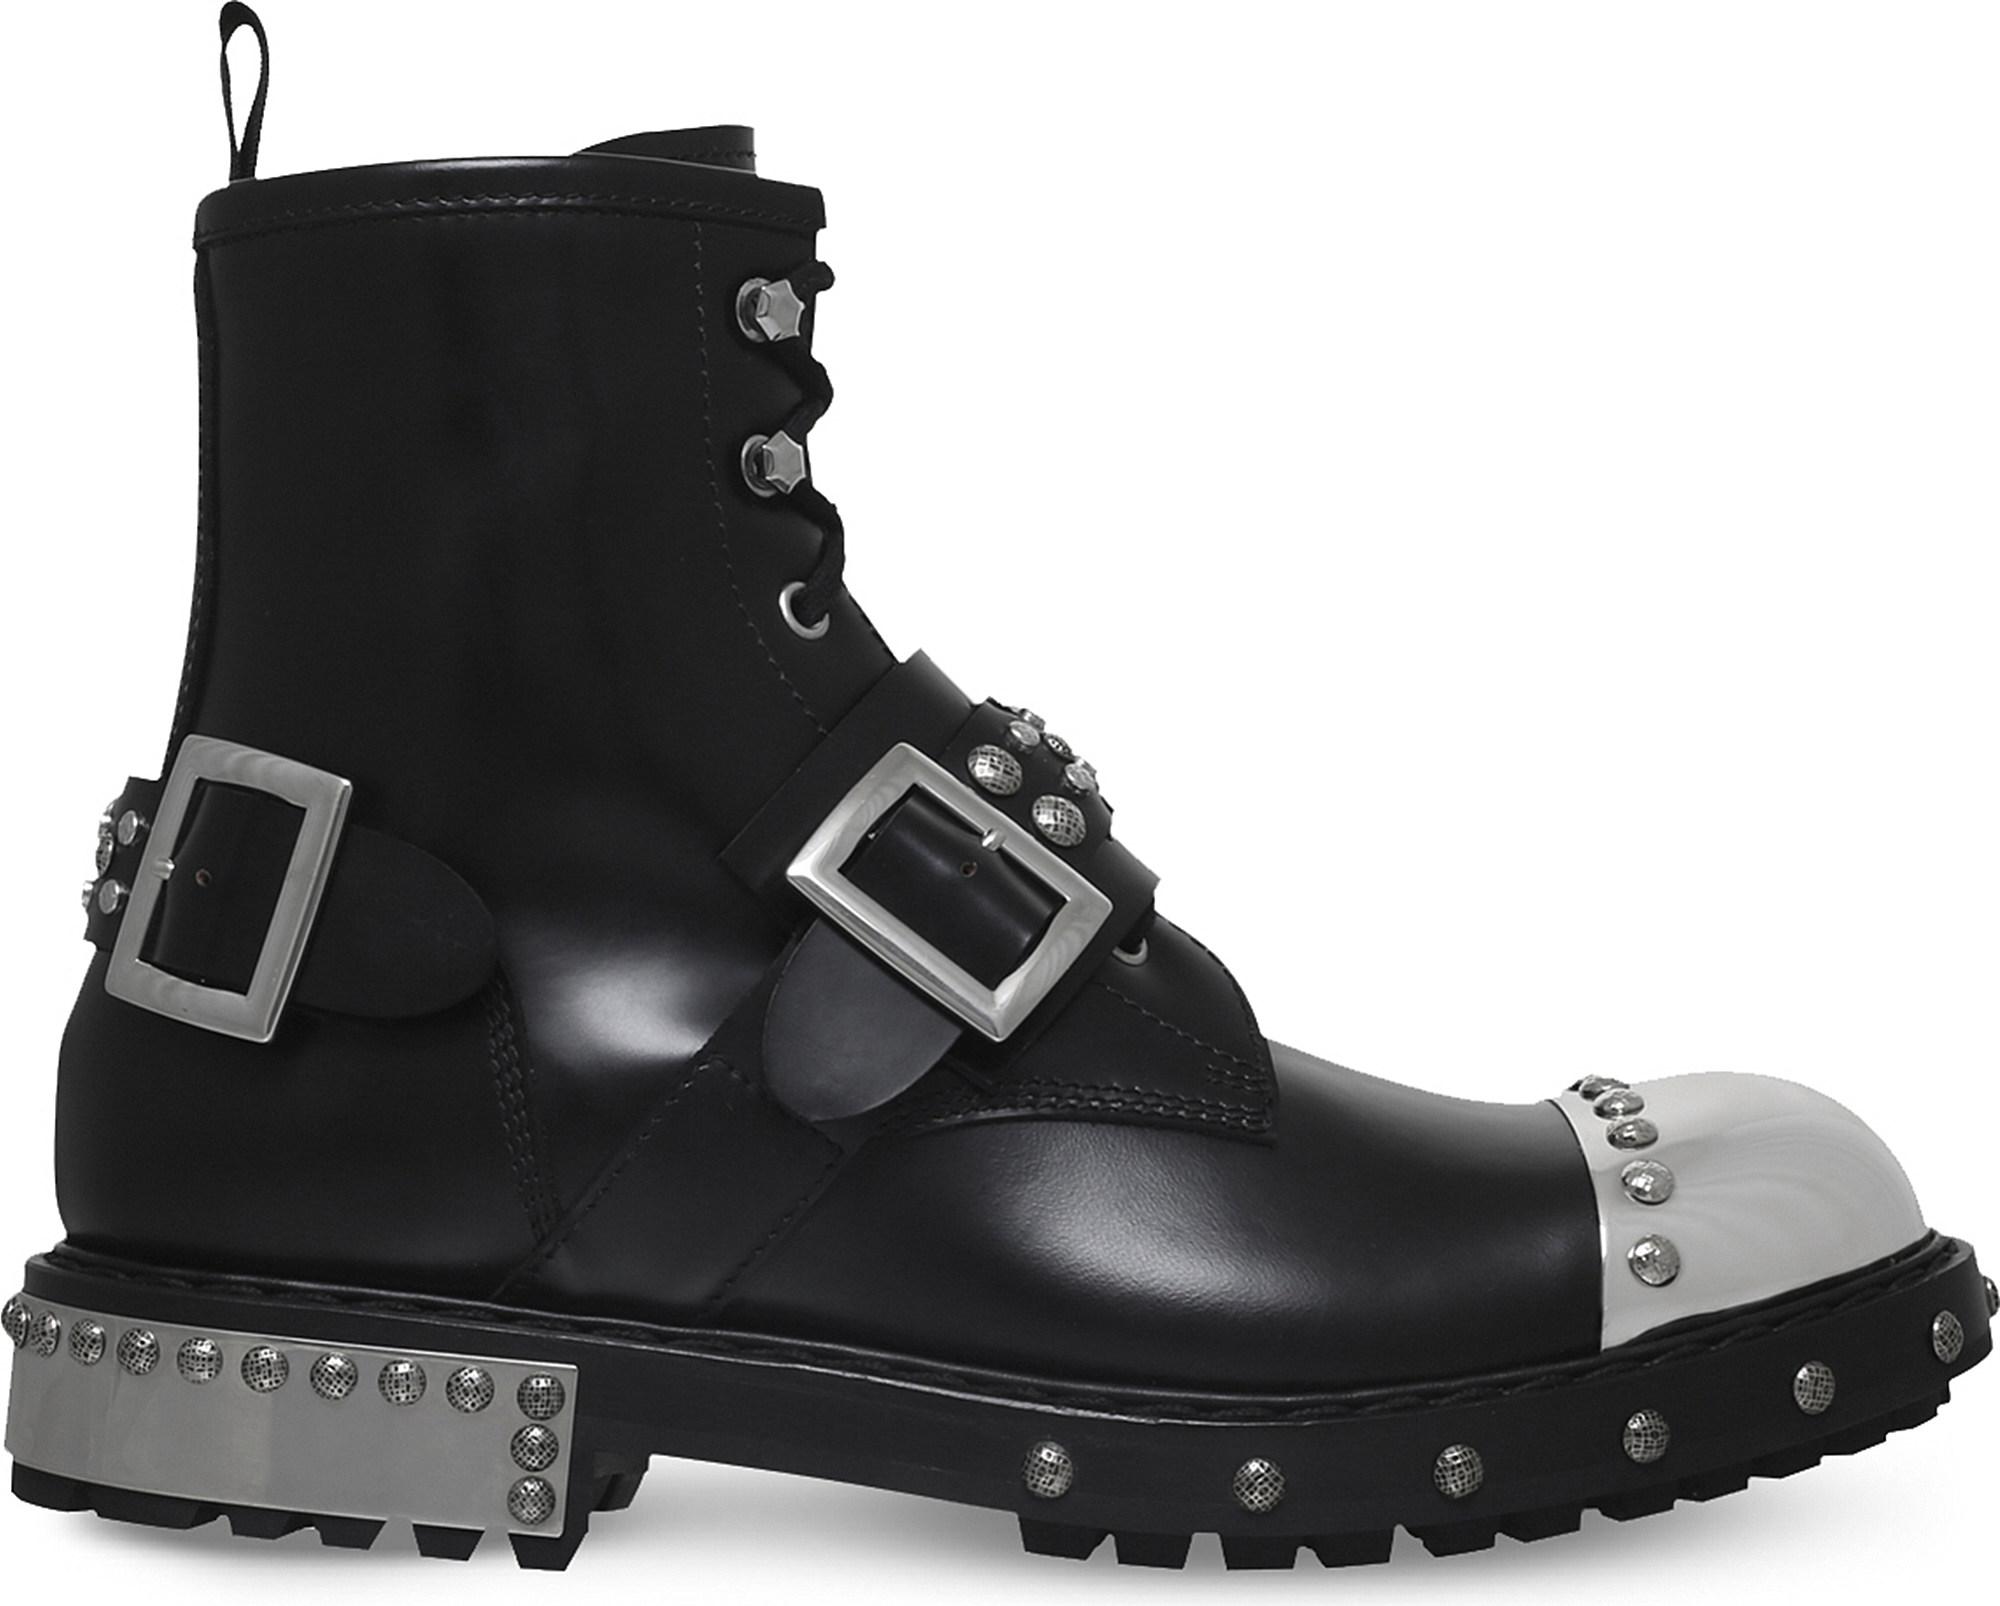 Alexander McQueen Steel Toe Cap Leather Biker Boots in Black for Men - Lyst